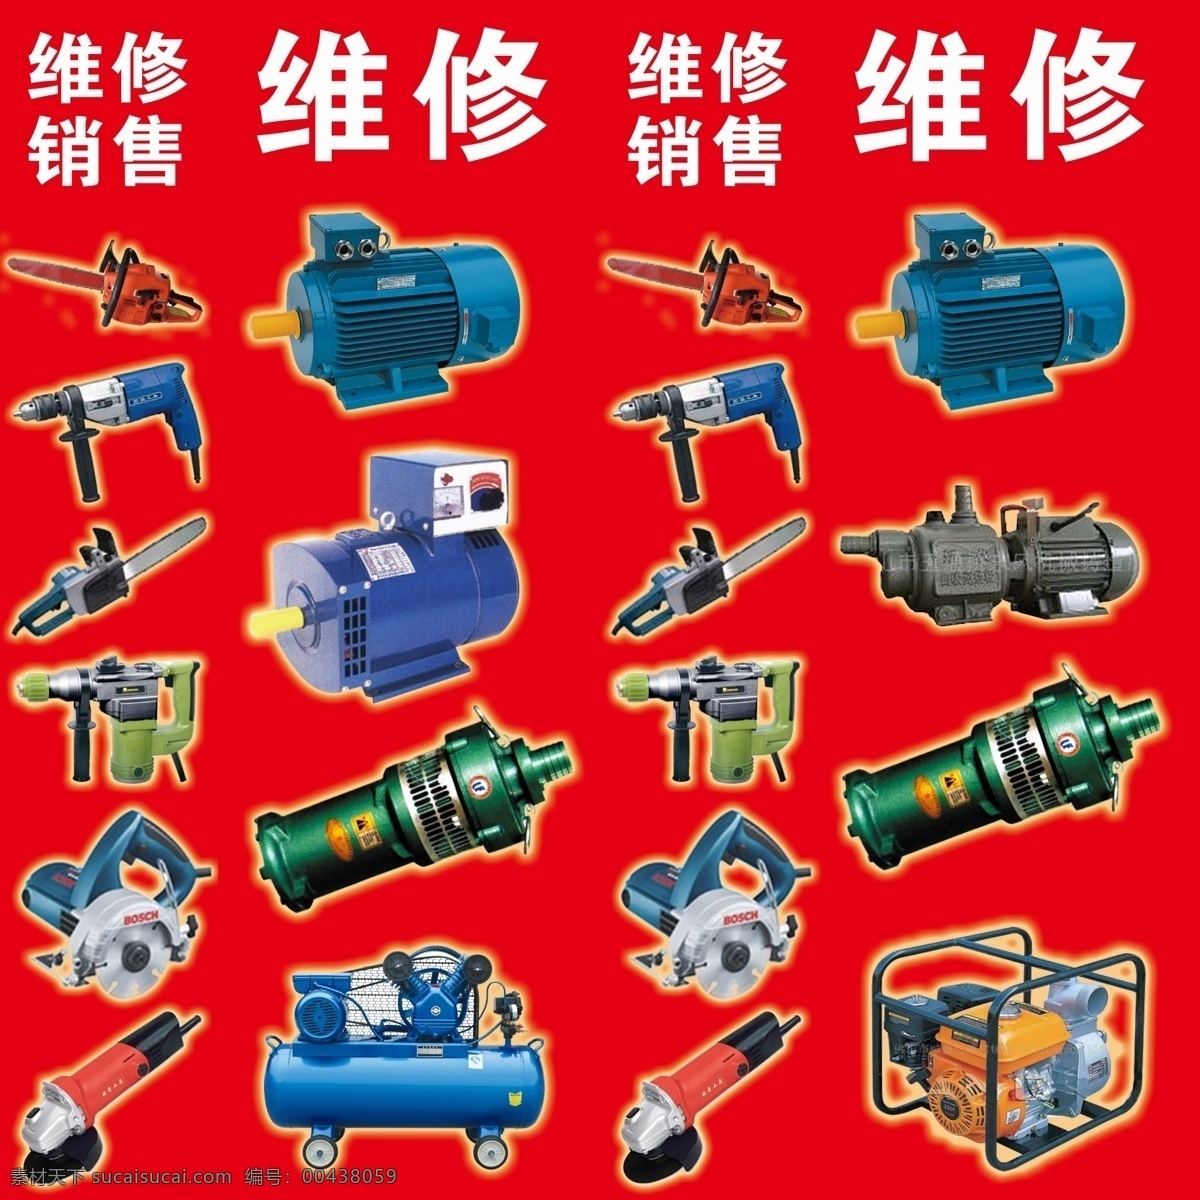 电机销售维修 电动工具 水泵 切割机 电锤 电机 手电锯 气泵 国内广告设计 广告设计模板 源文件